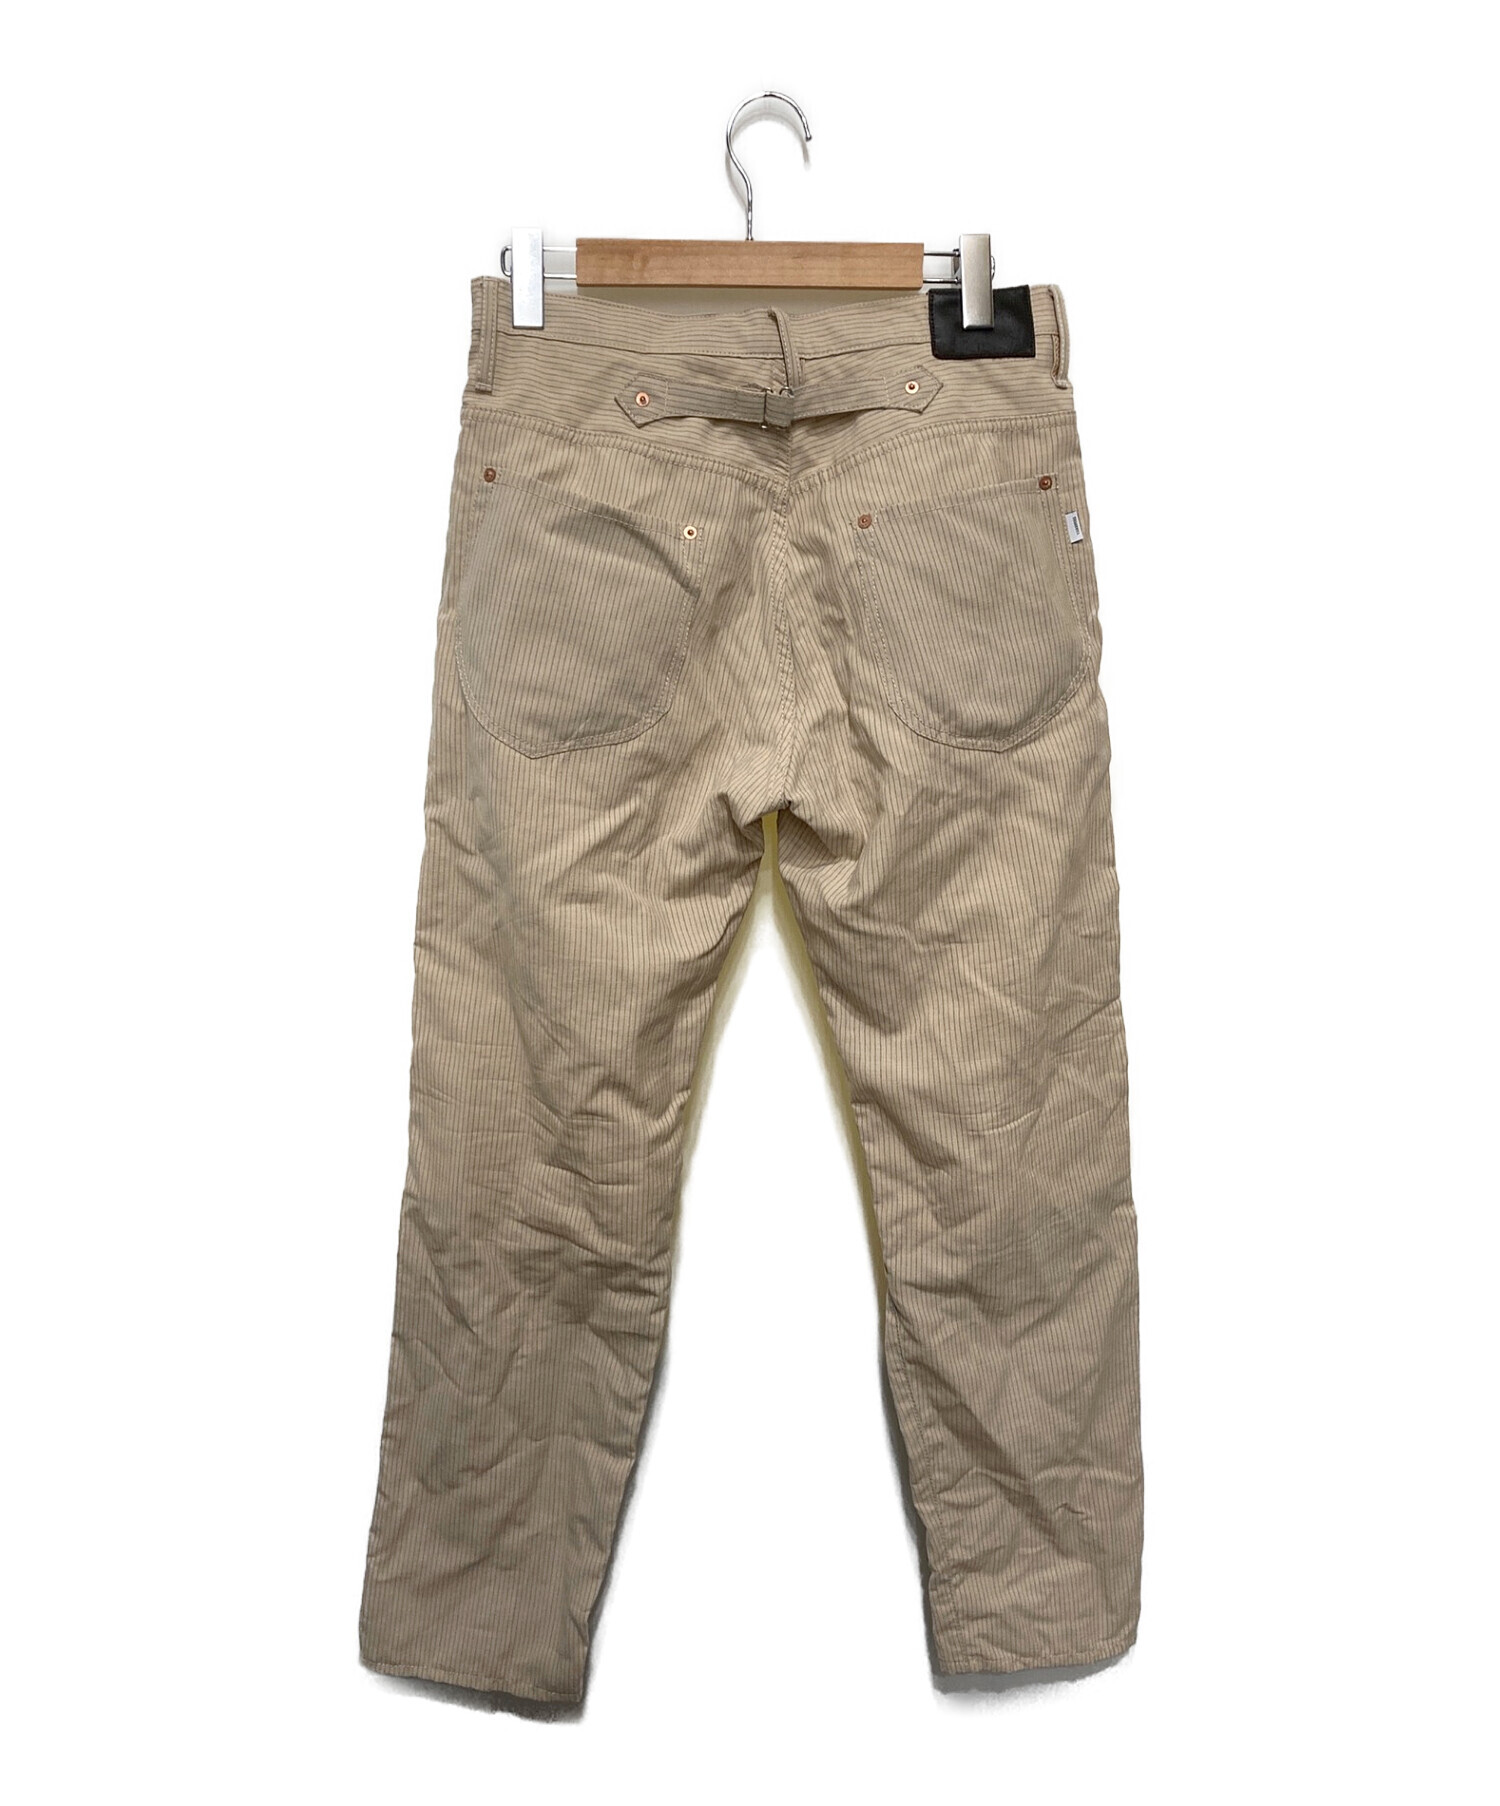 SUGARHILL (シュガーヒル) Type 502 Wool Linen Denim Pants/タイプ502ウールリネンデニムパンツ アイボリー  サイズ:SIZE34